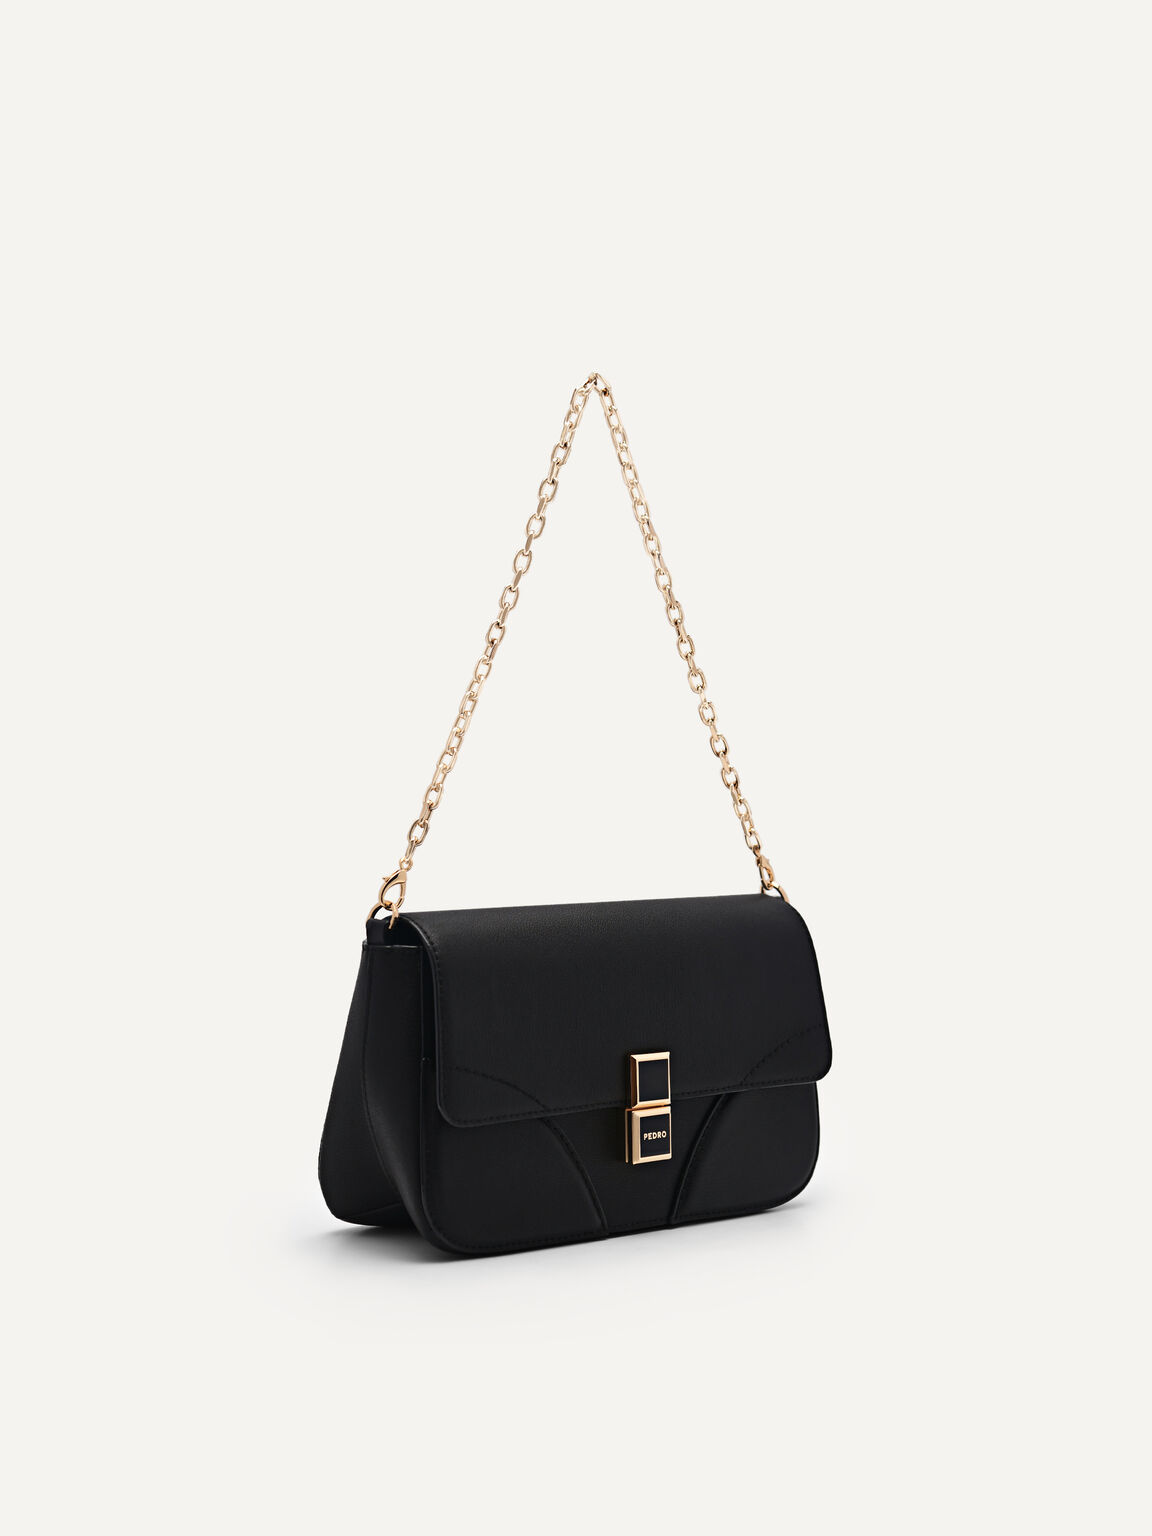 Bianca Leather Shoulder Bag, Black, hi-res